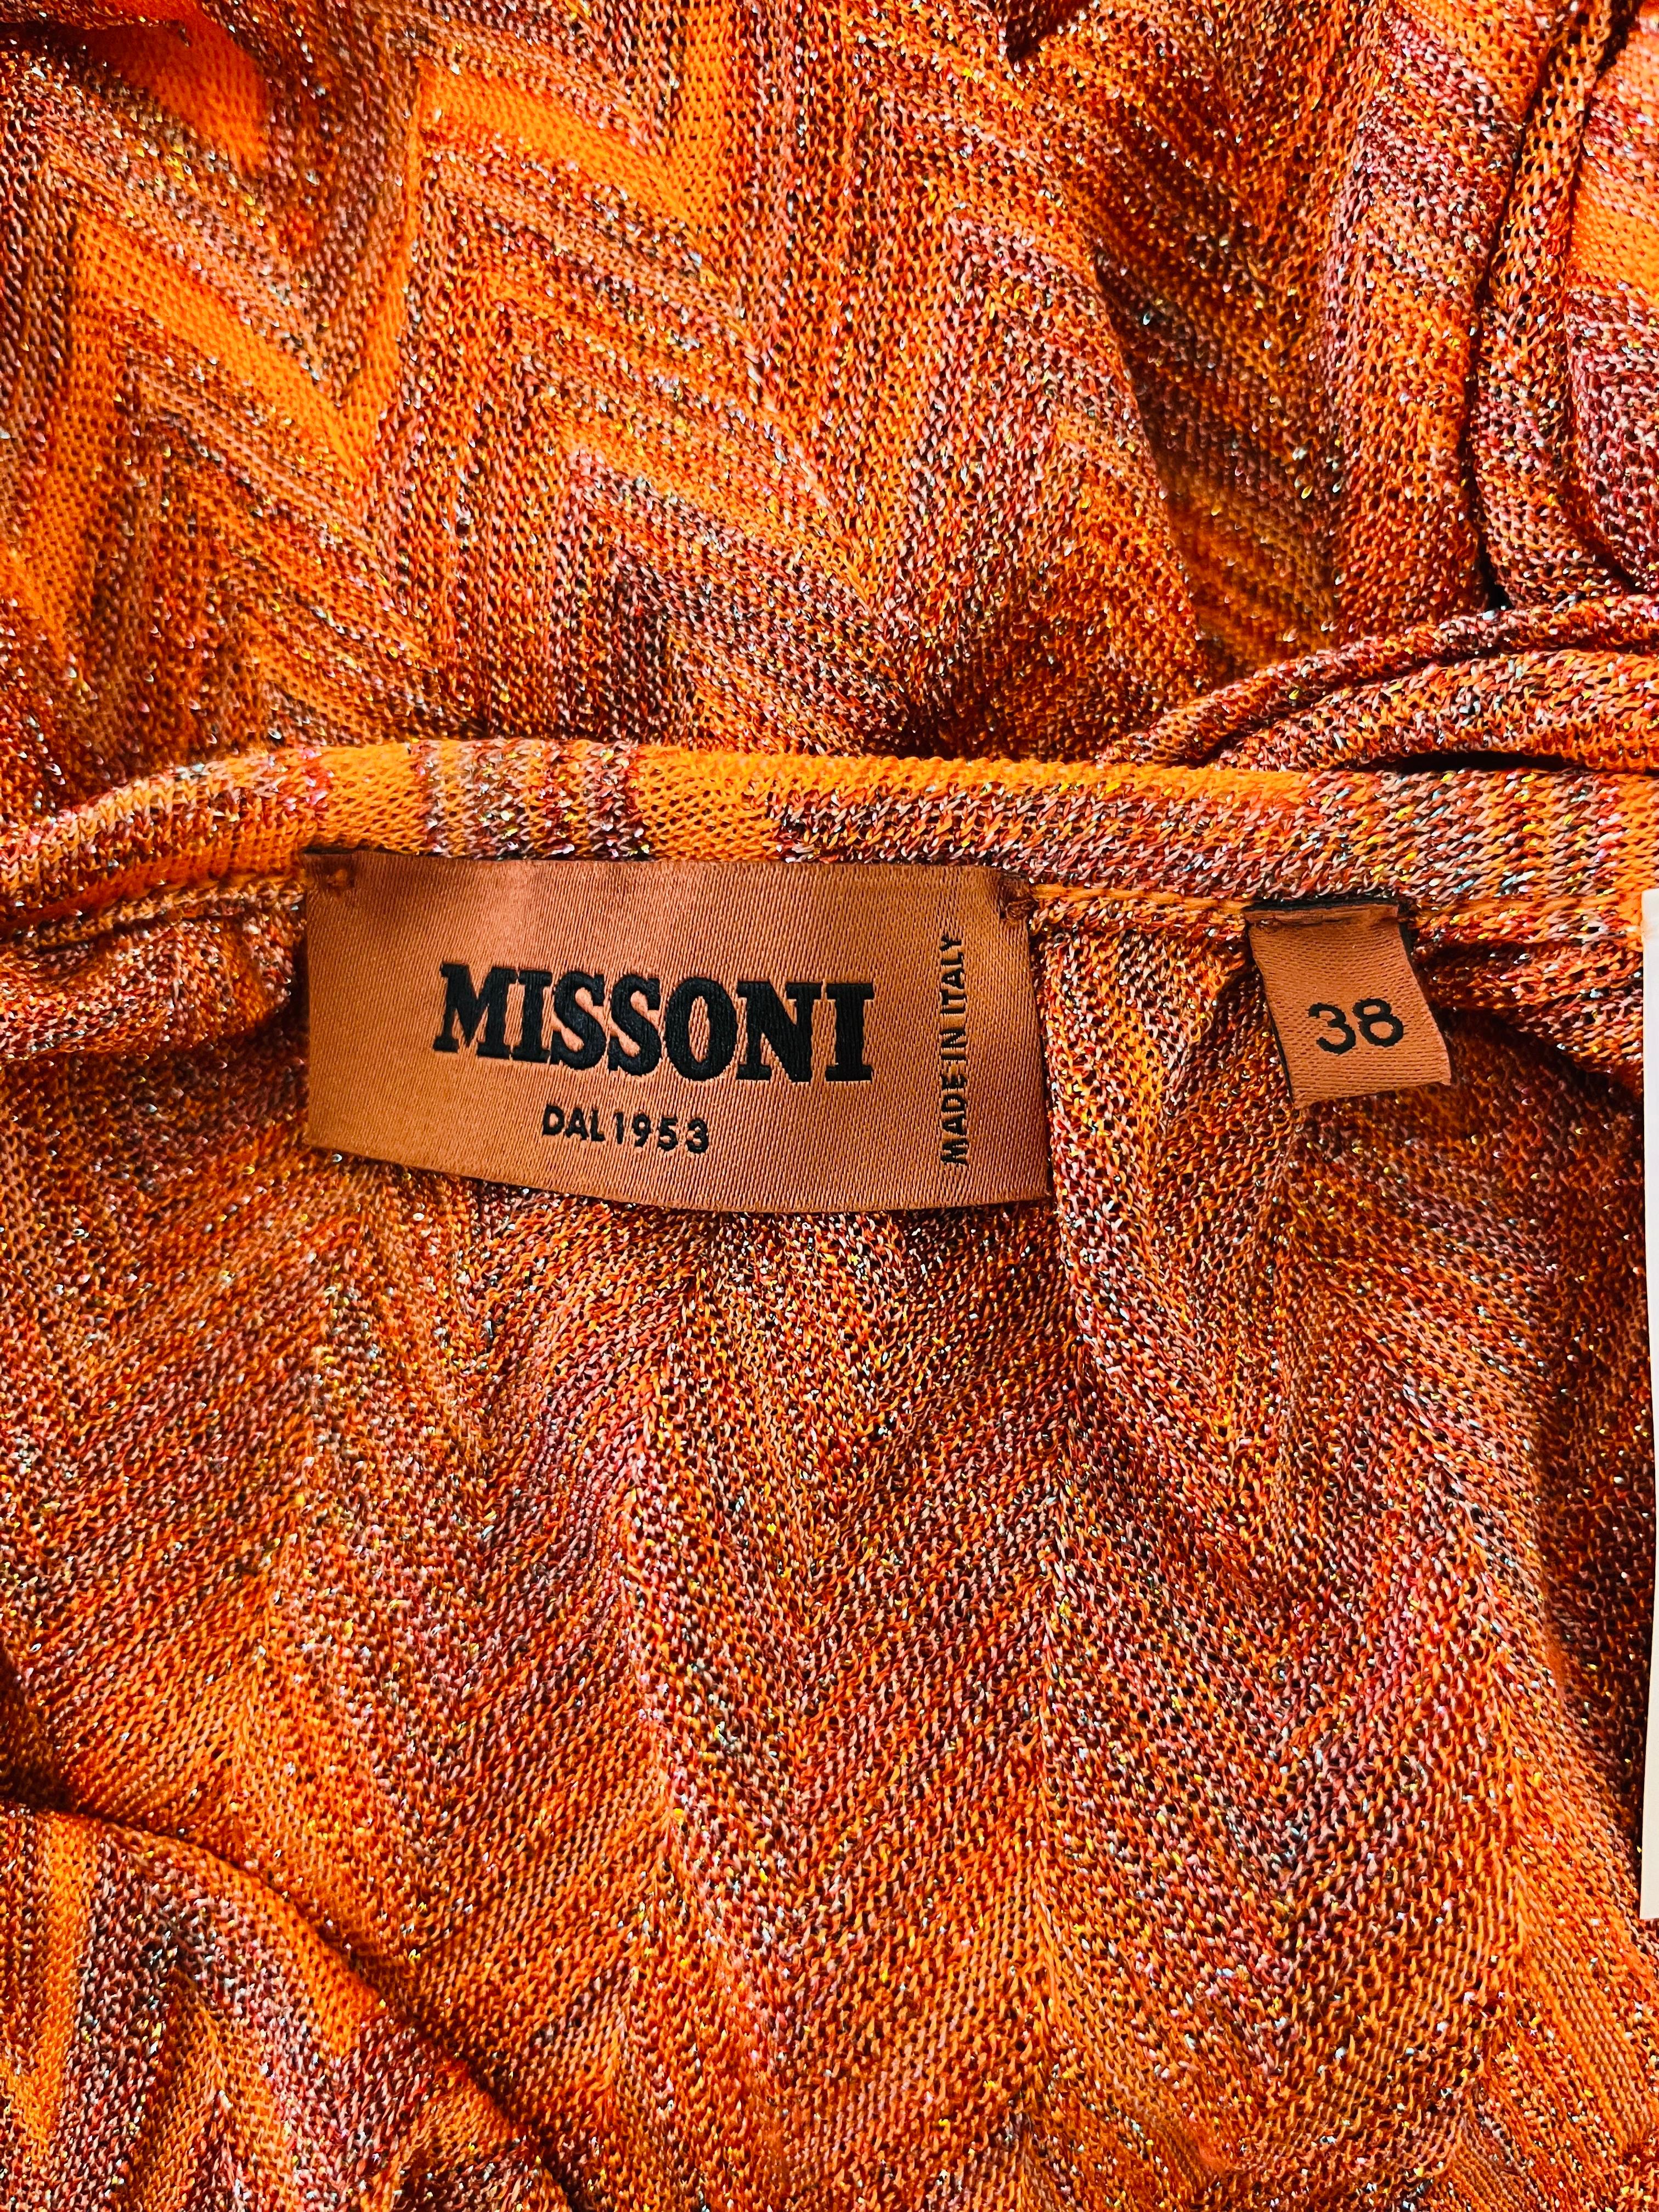 Missoni Fringe Detailed Knitted Summer Dress 3